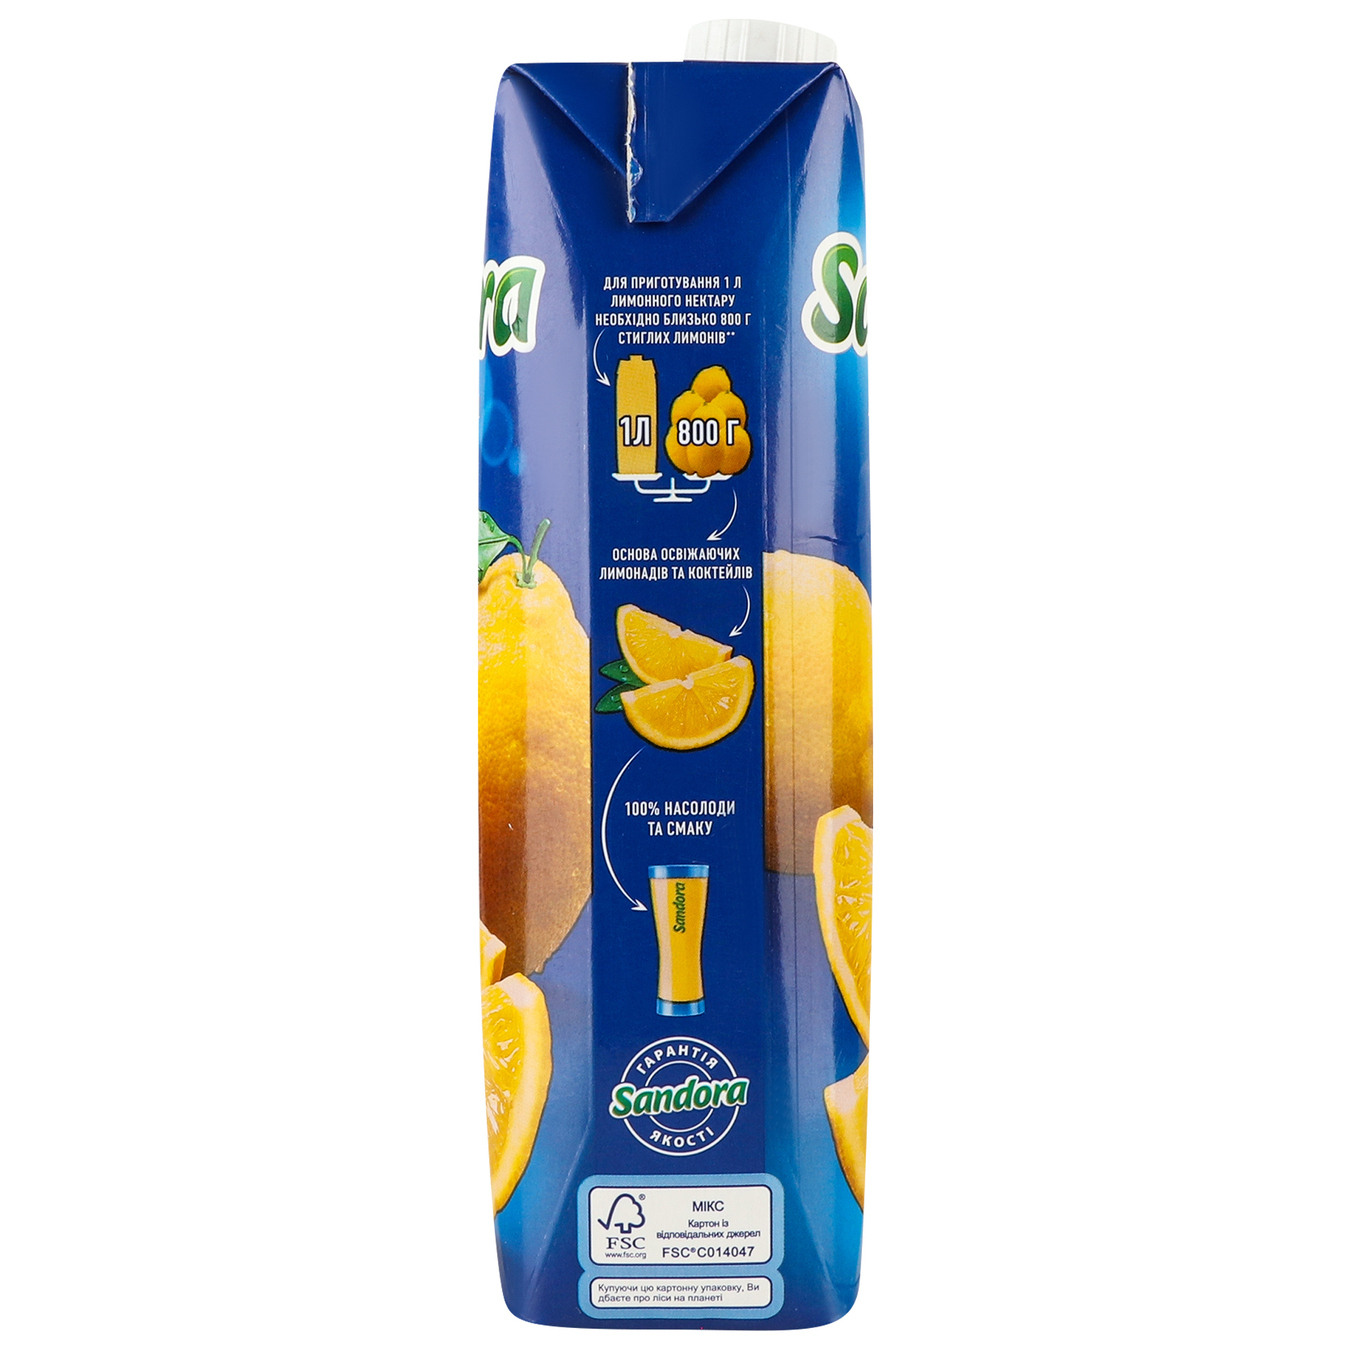 Sandora Lemon Nectar 0,95l 4